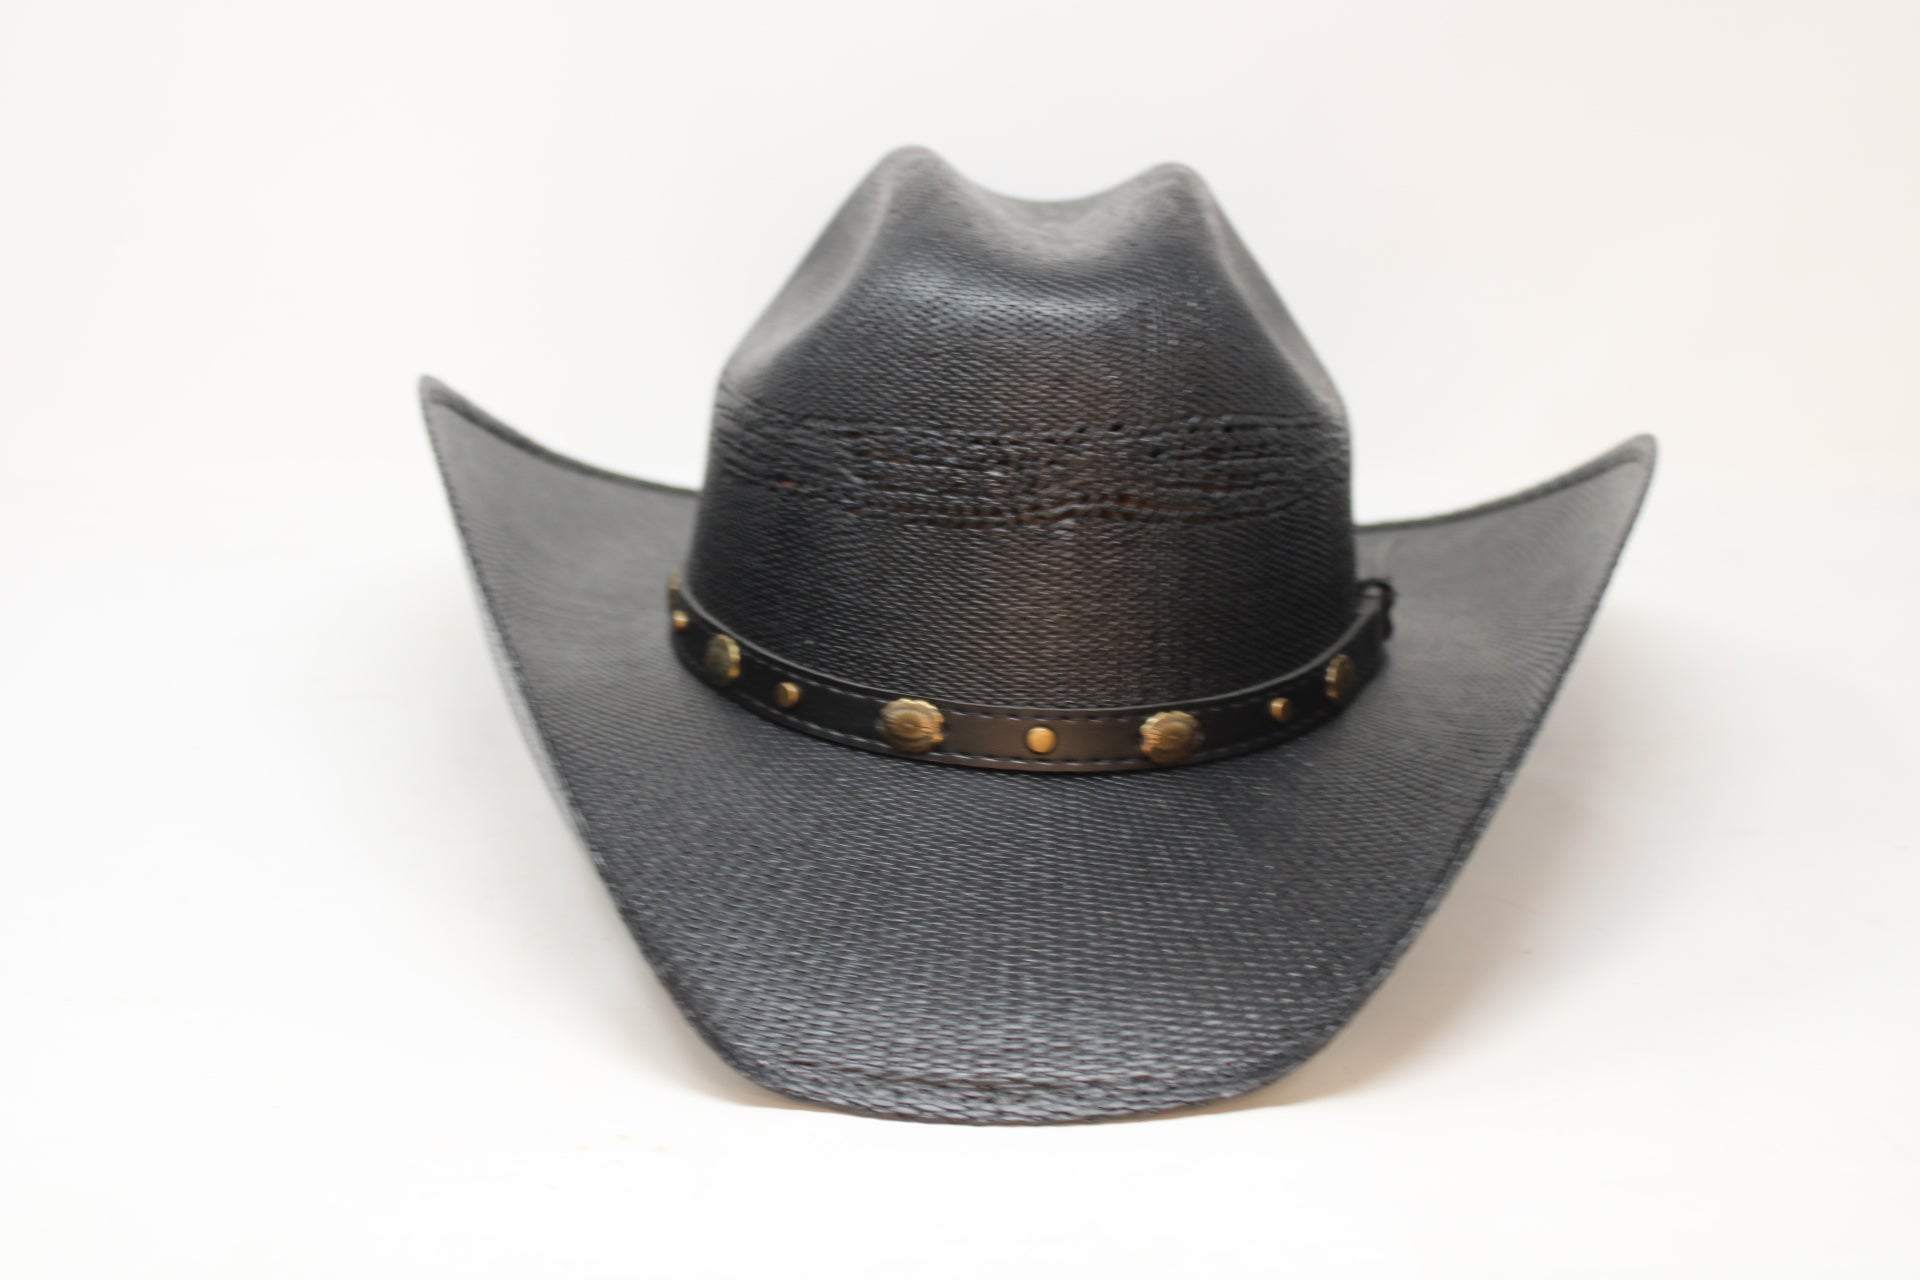 Daniel Straw Cowboy Hat